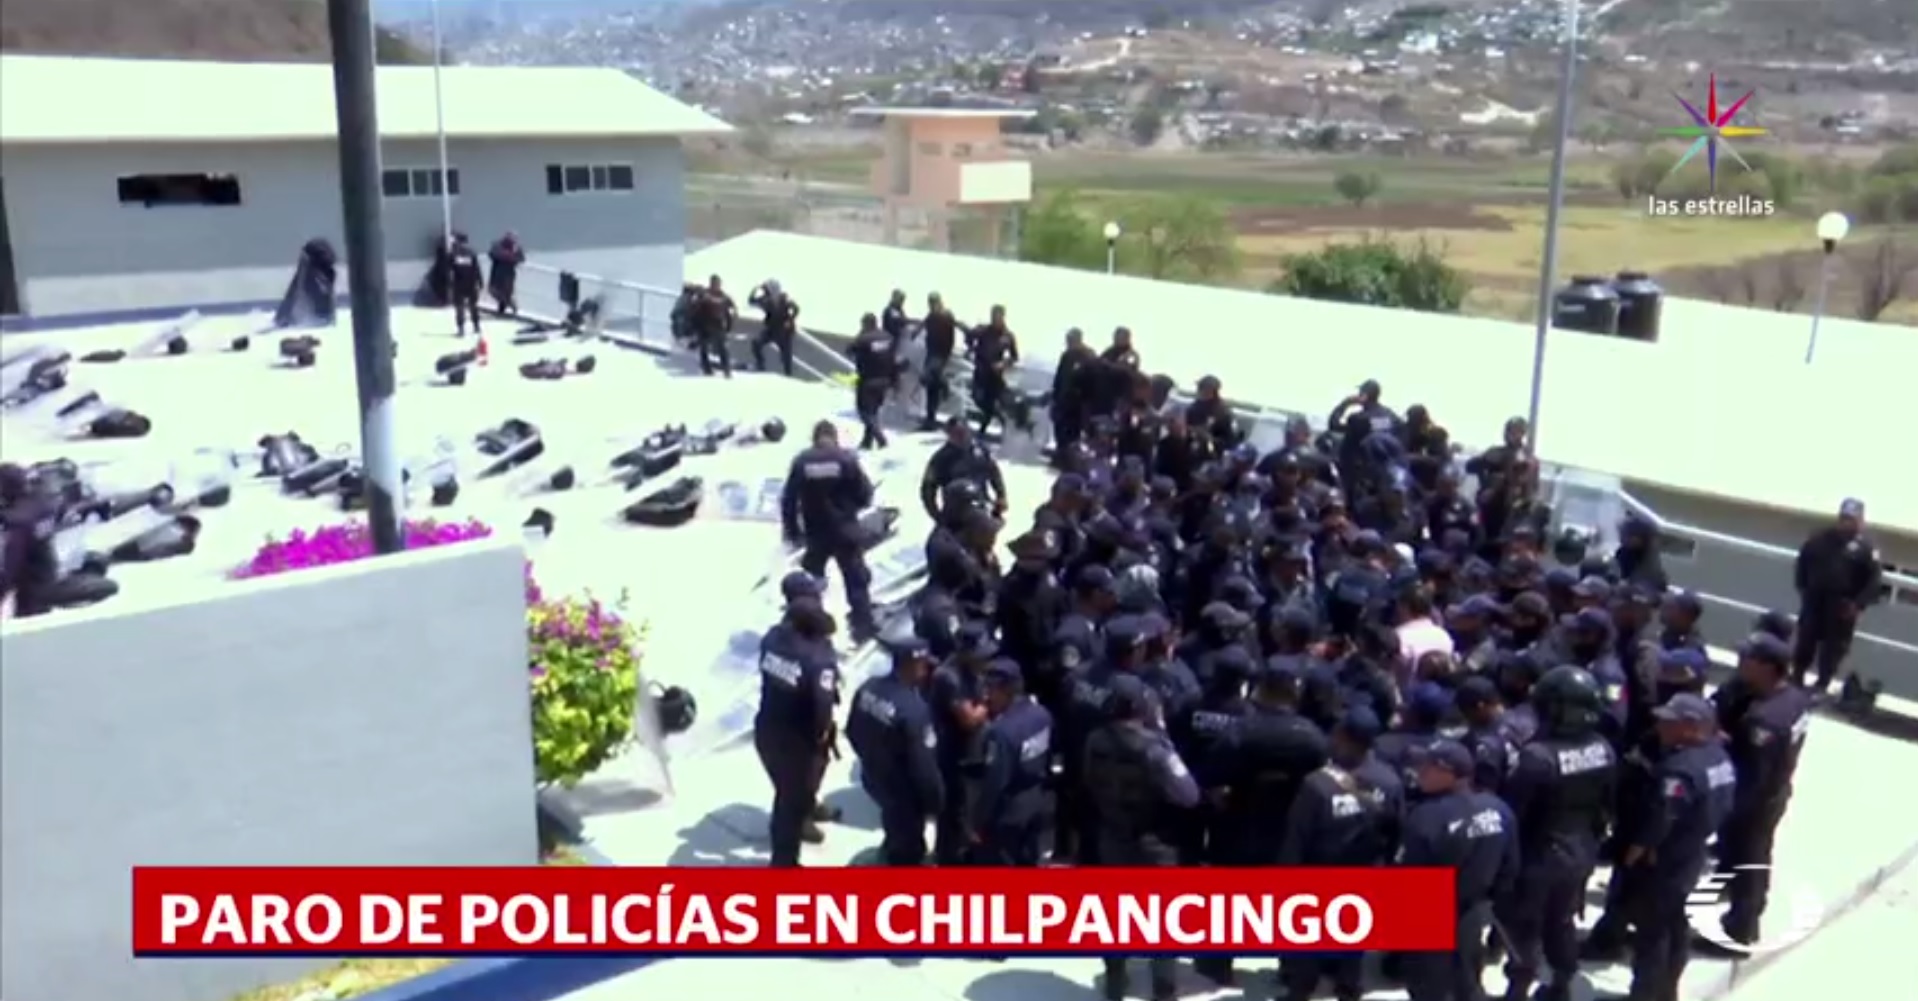 Policías estatales, Chilpancingo, Chilapa, Guerrero, seguridad, paro de labores,